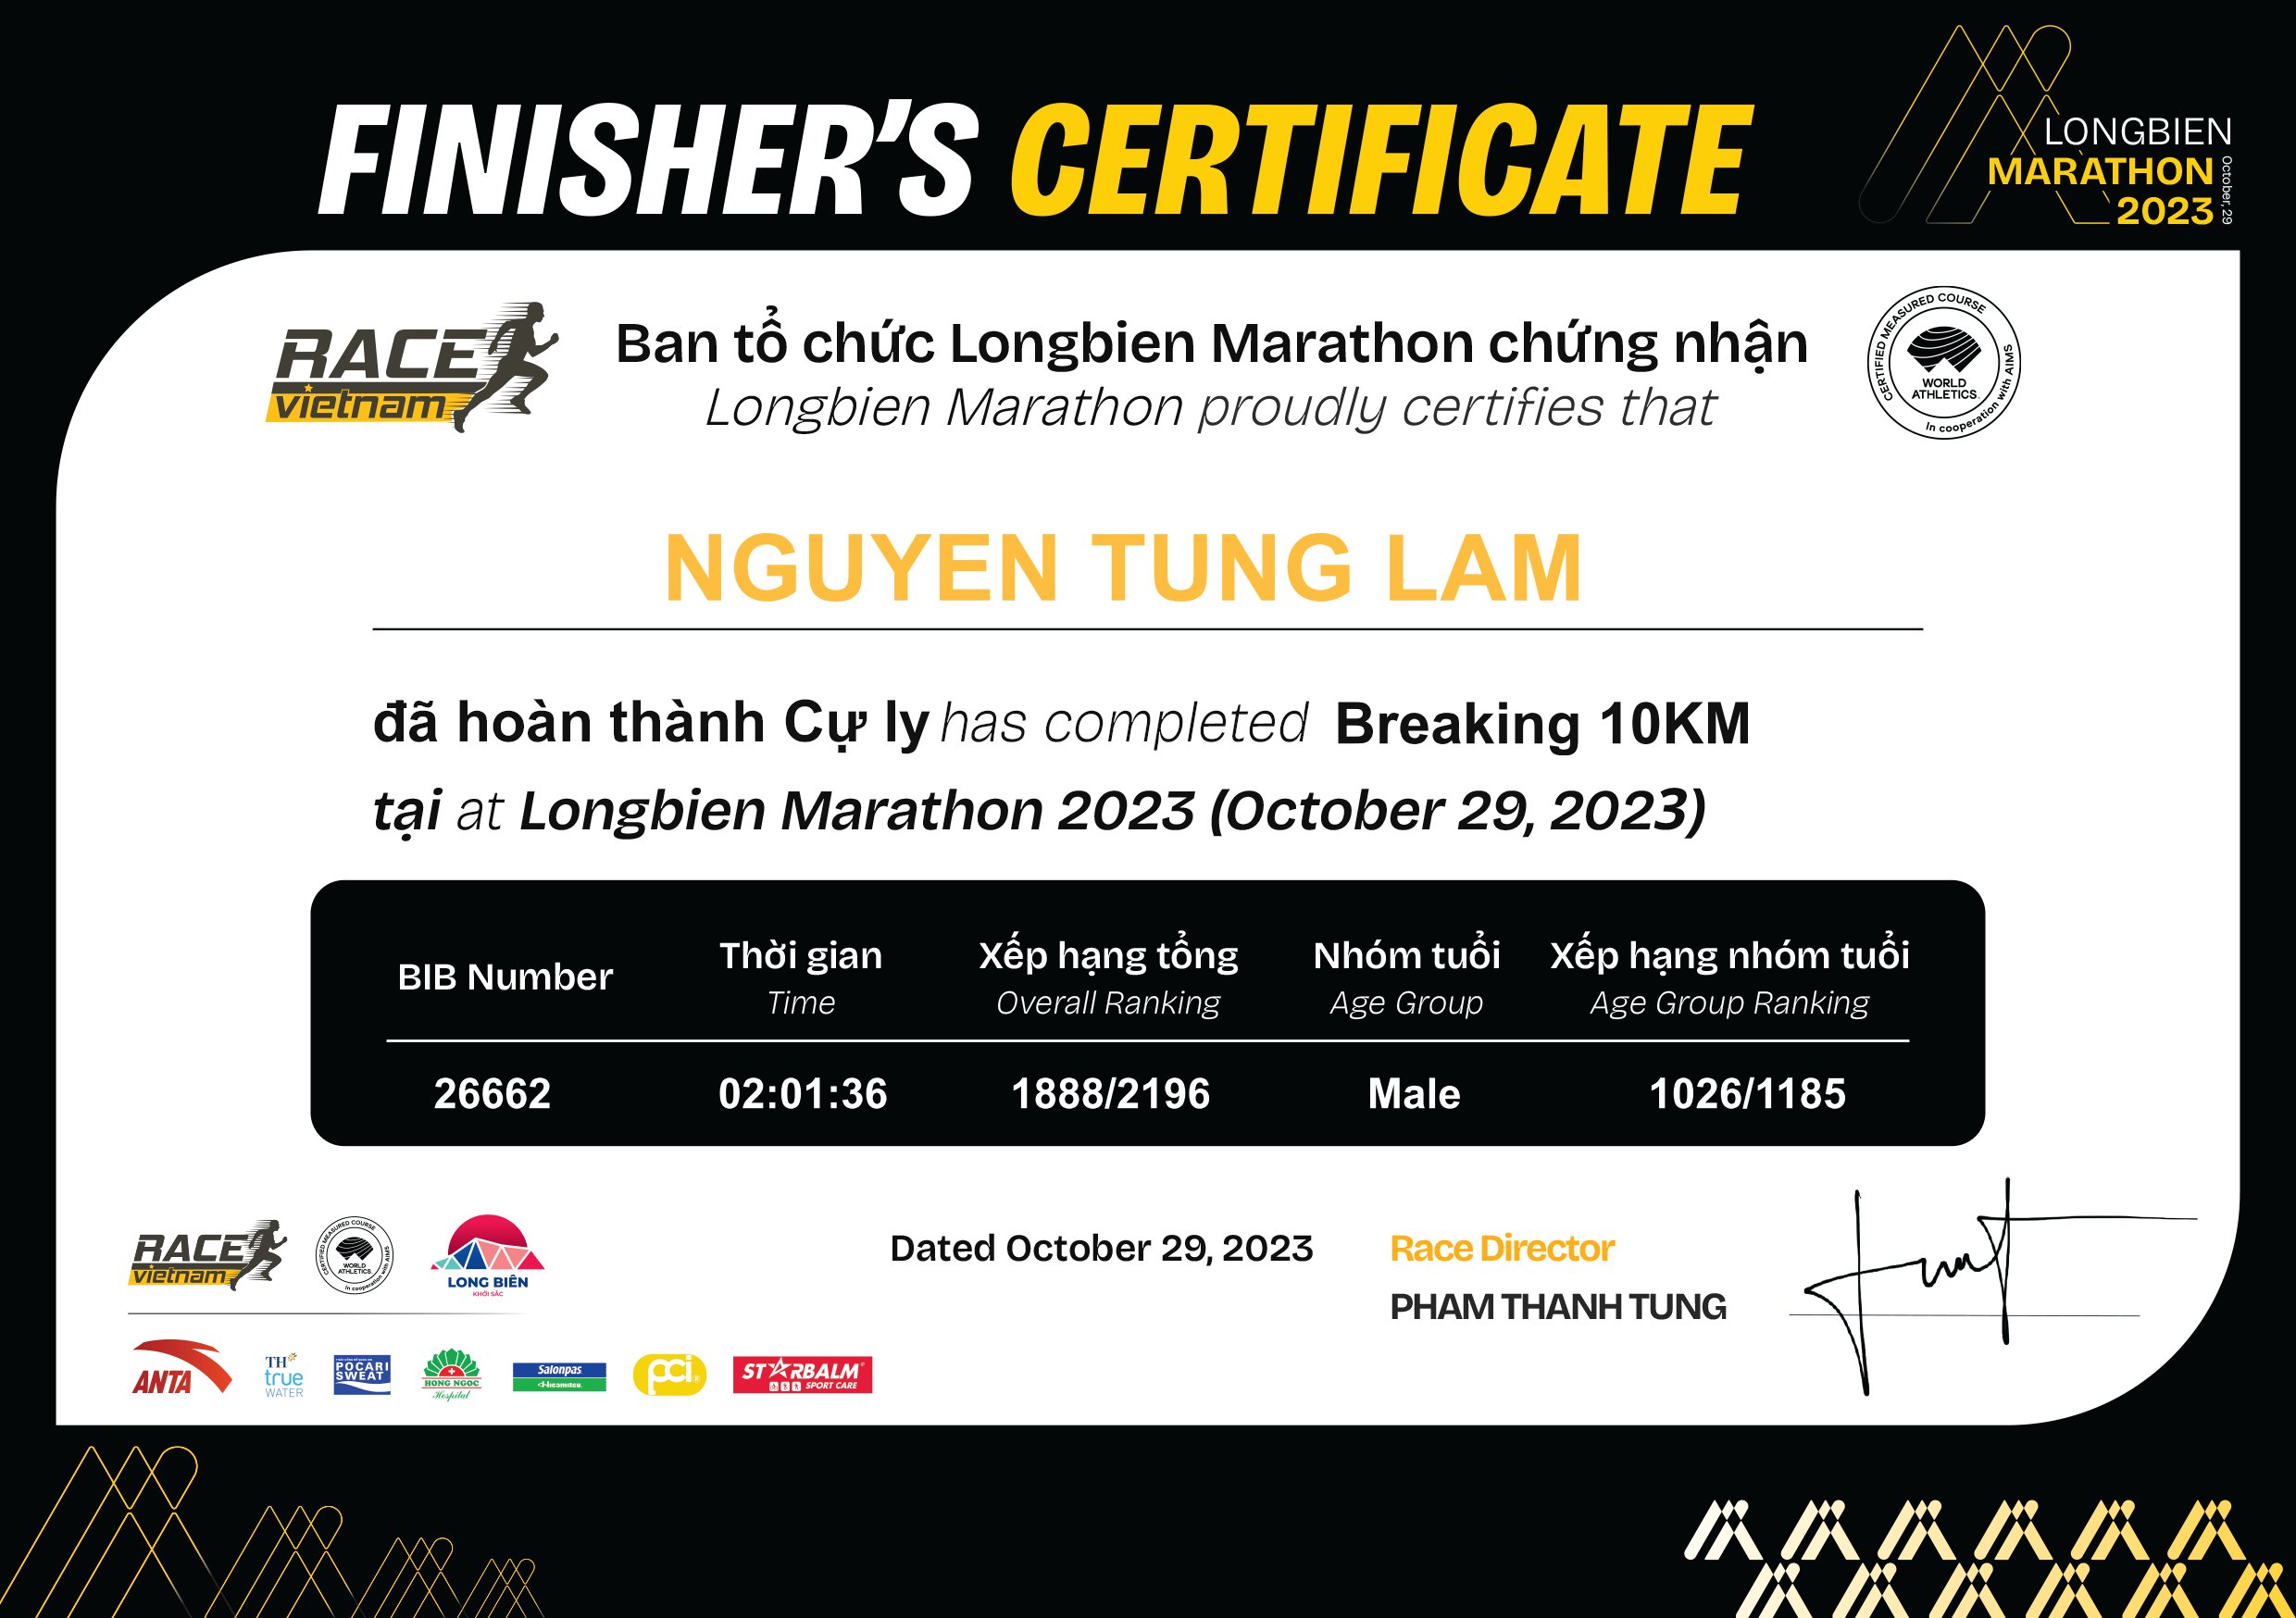 26662 - Nguyen Tung Lam